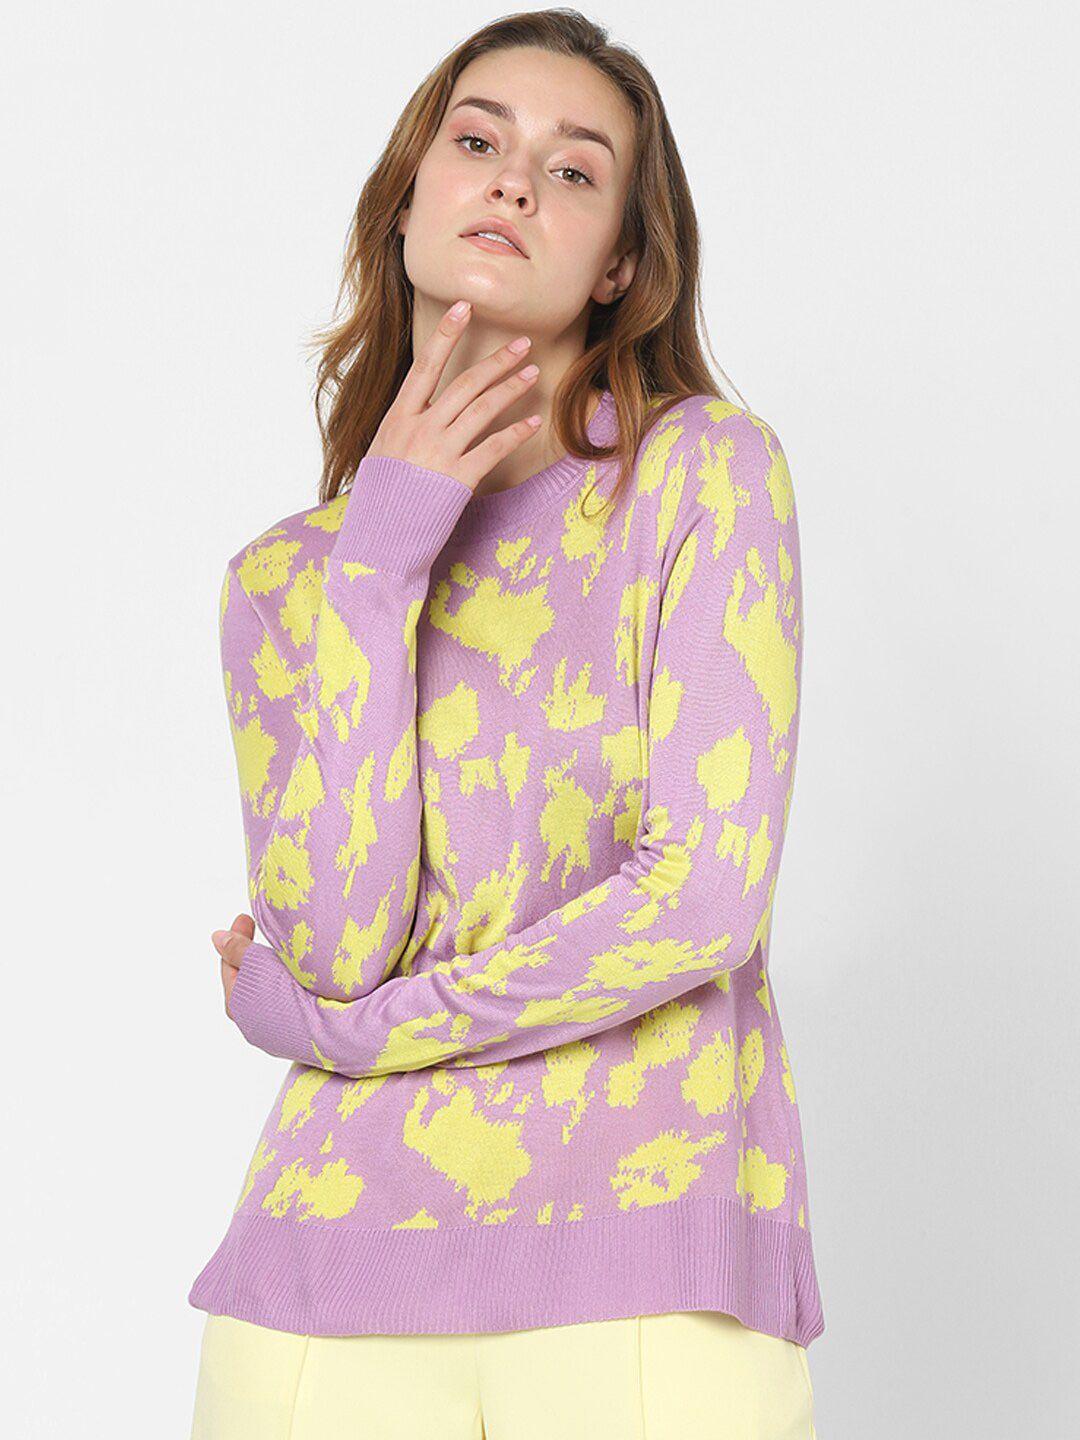 vero moda women purple & yellow printed sweater